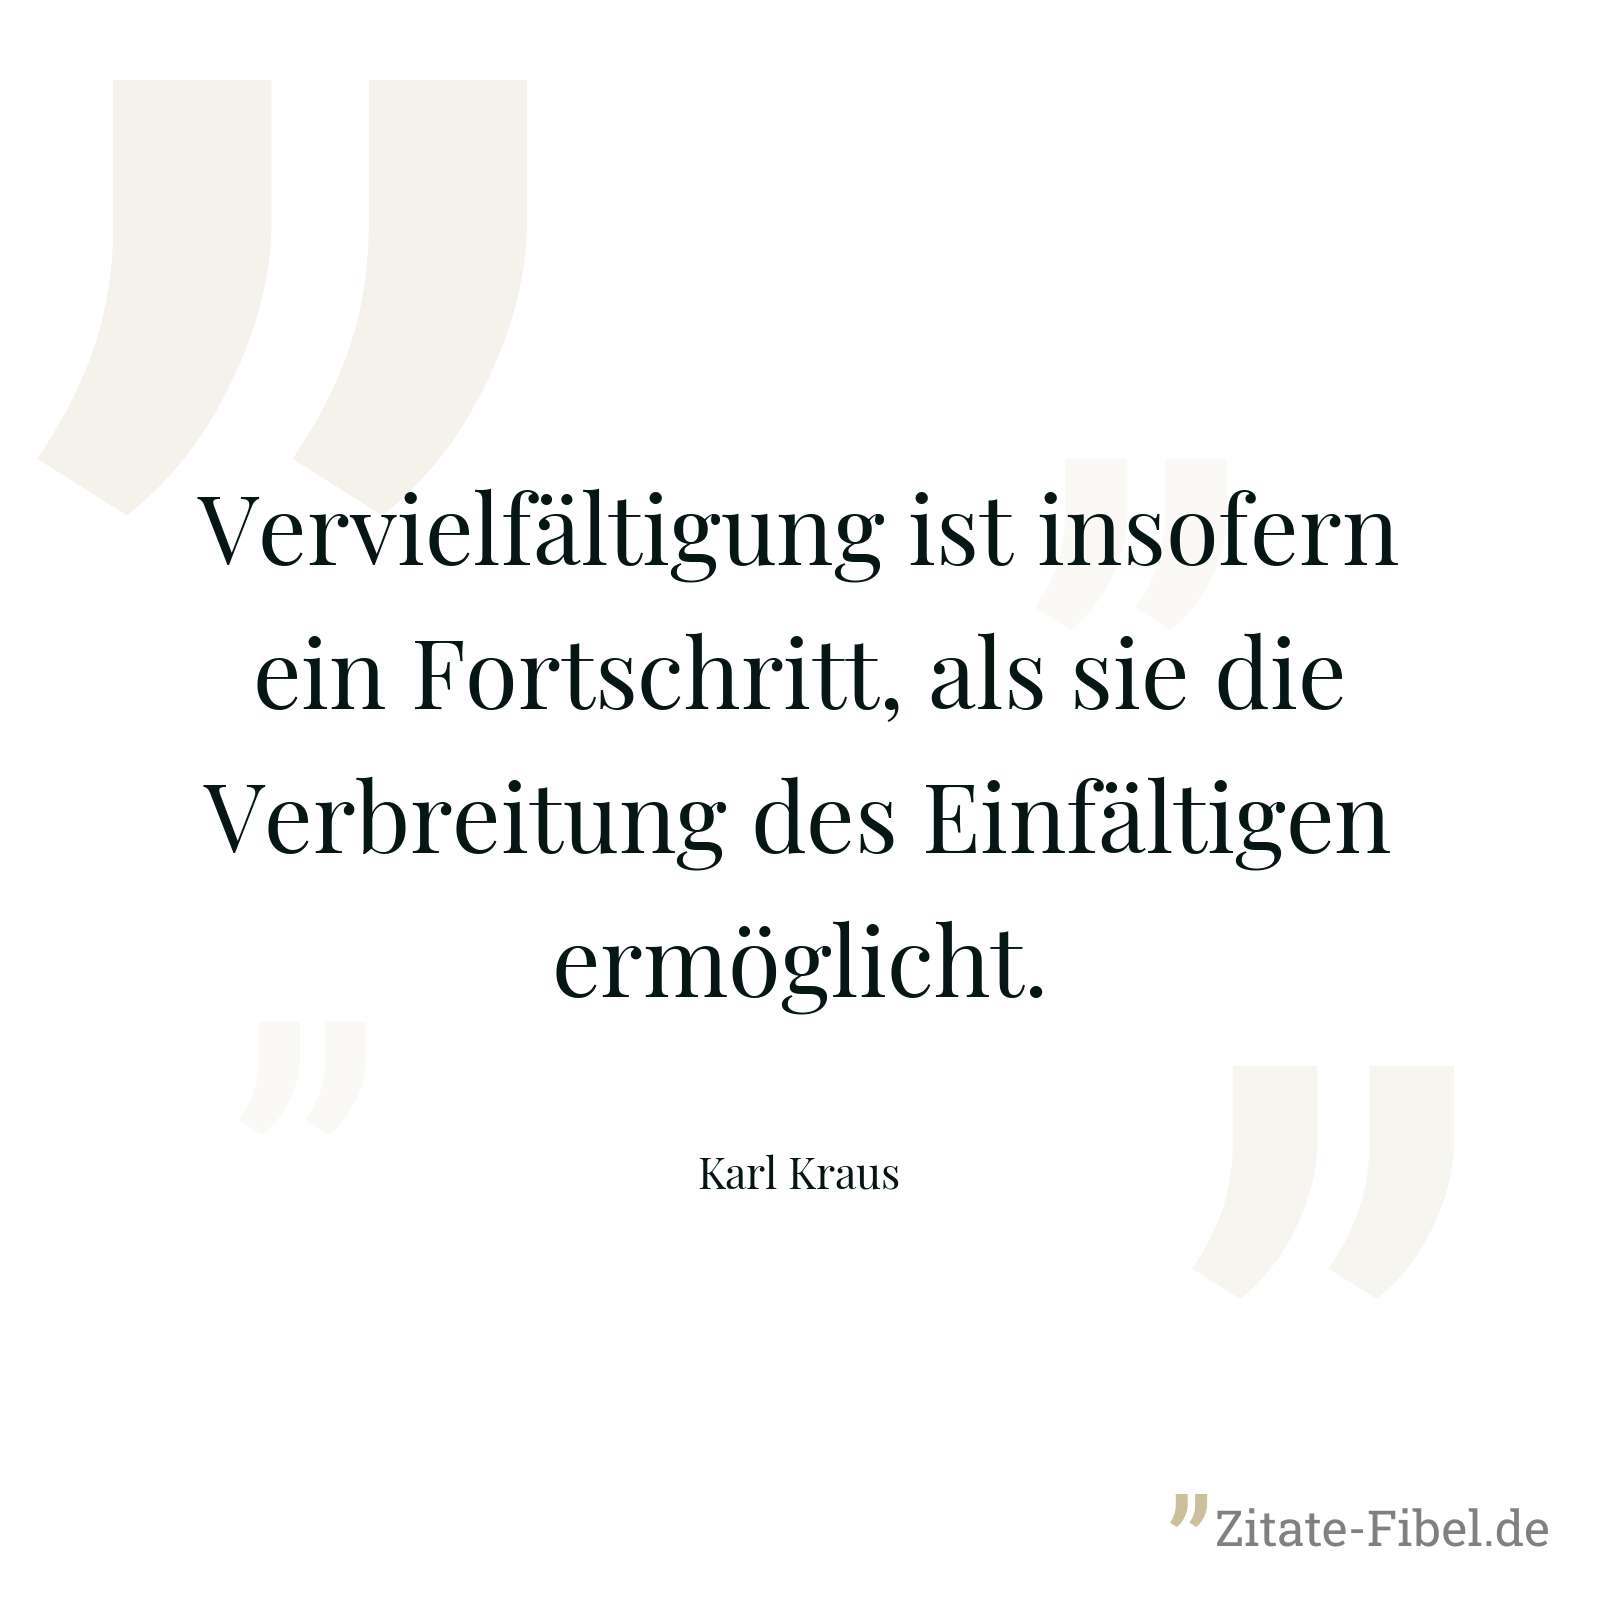 Vervielfältigung ist insofern ein Fortschritt, als sie die Verbreitung des Einfältigen ermöglicht. - Karl Kraus